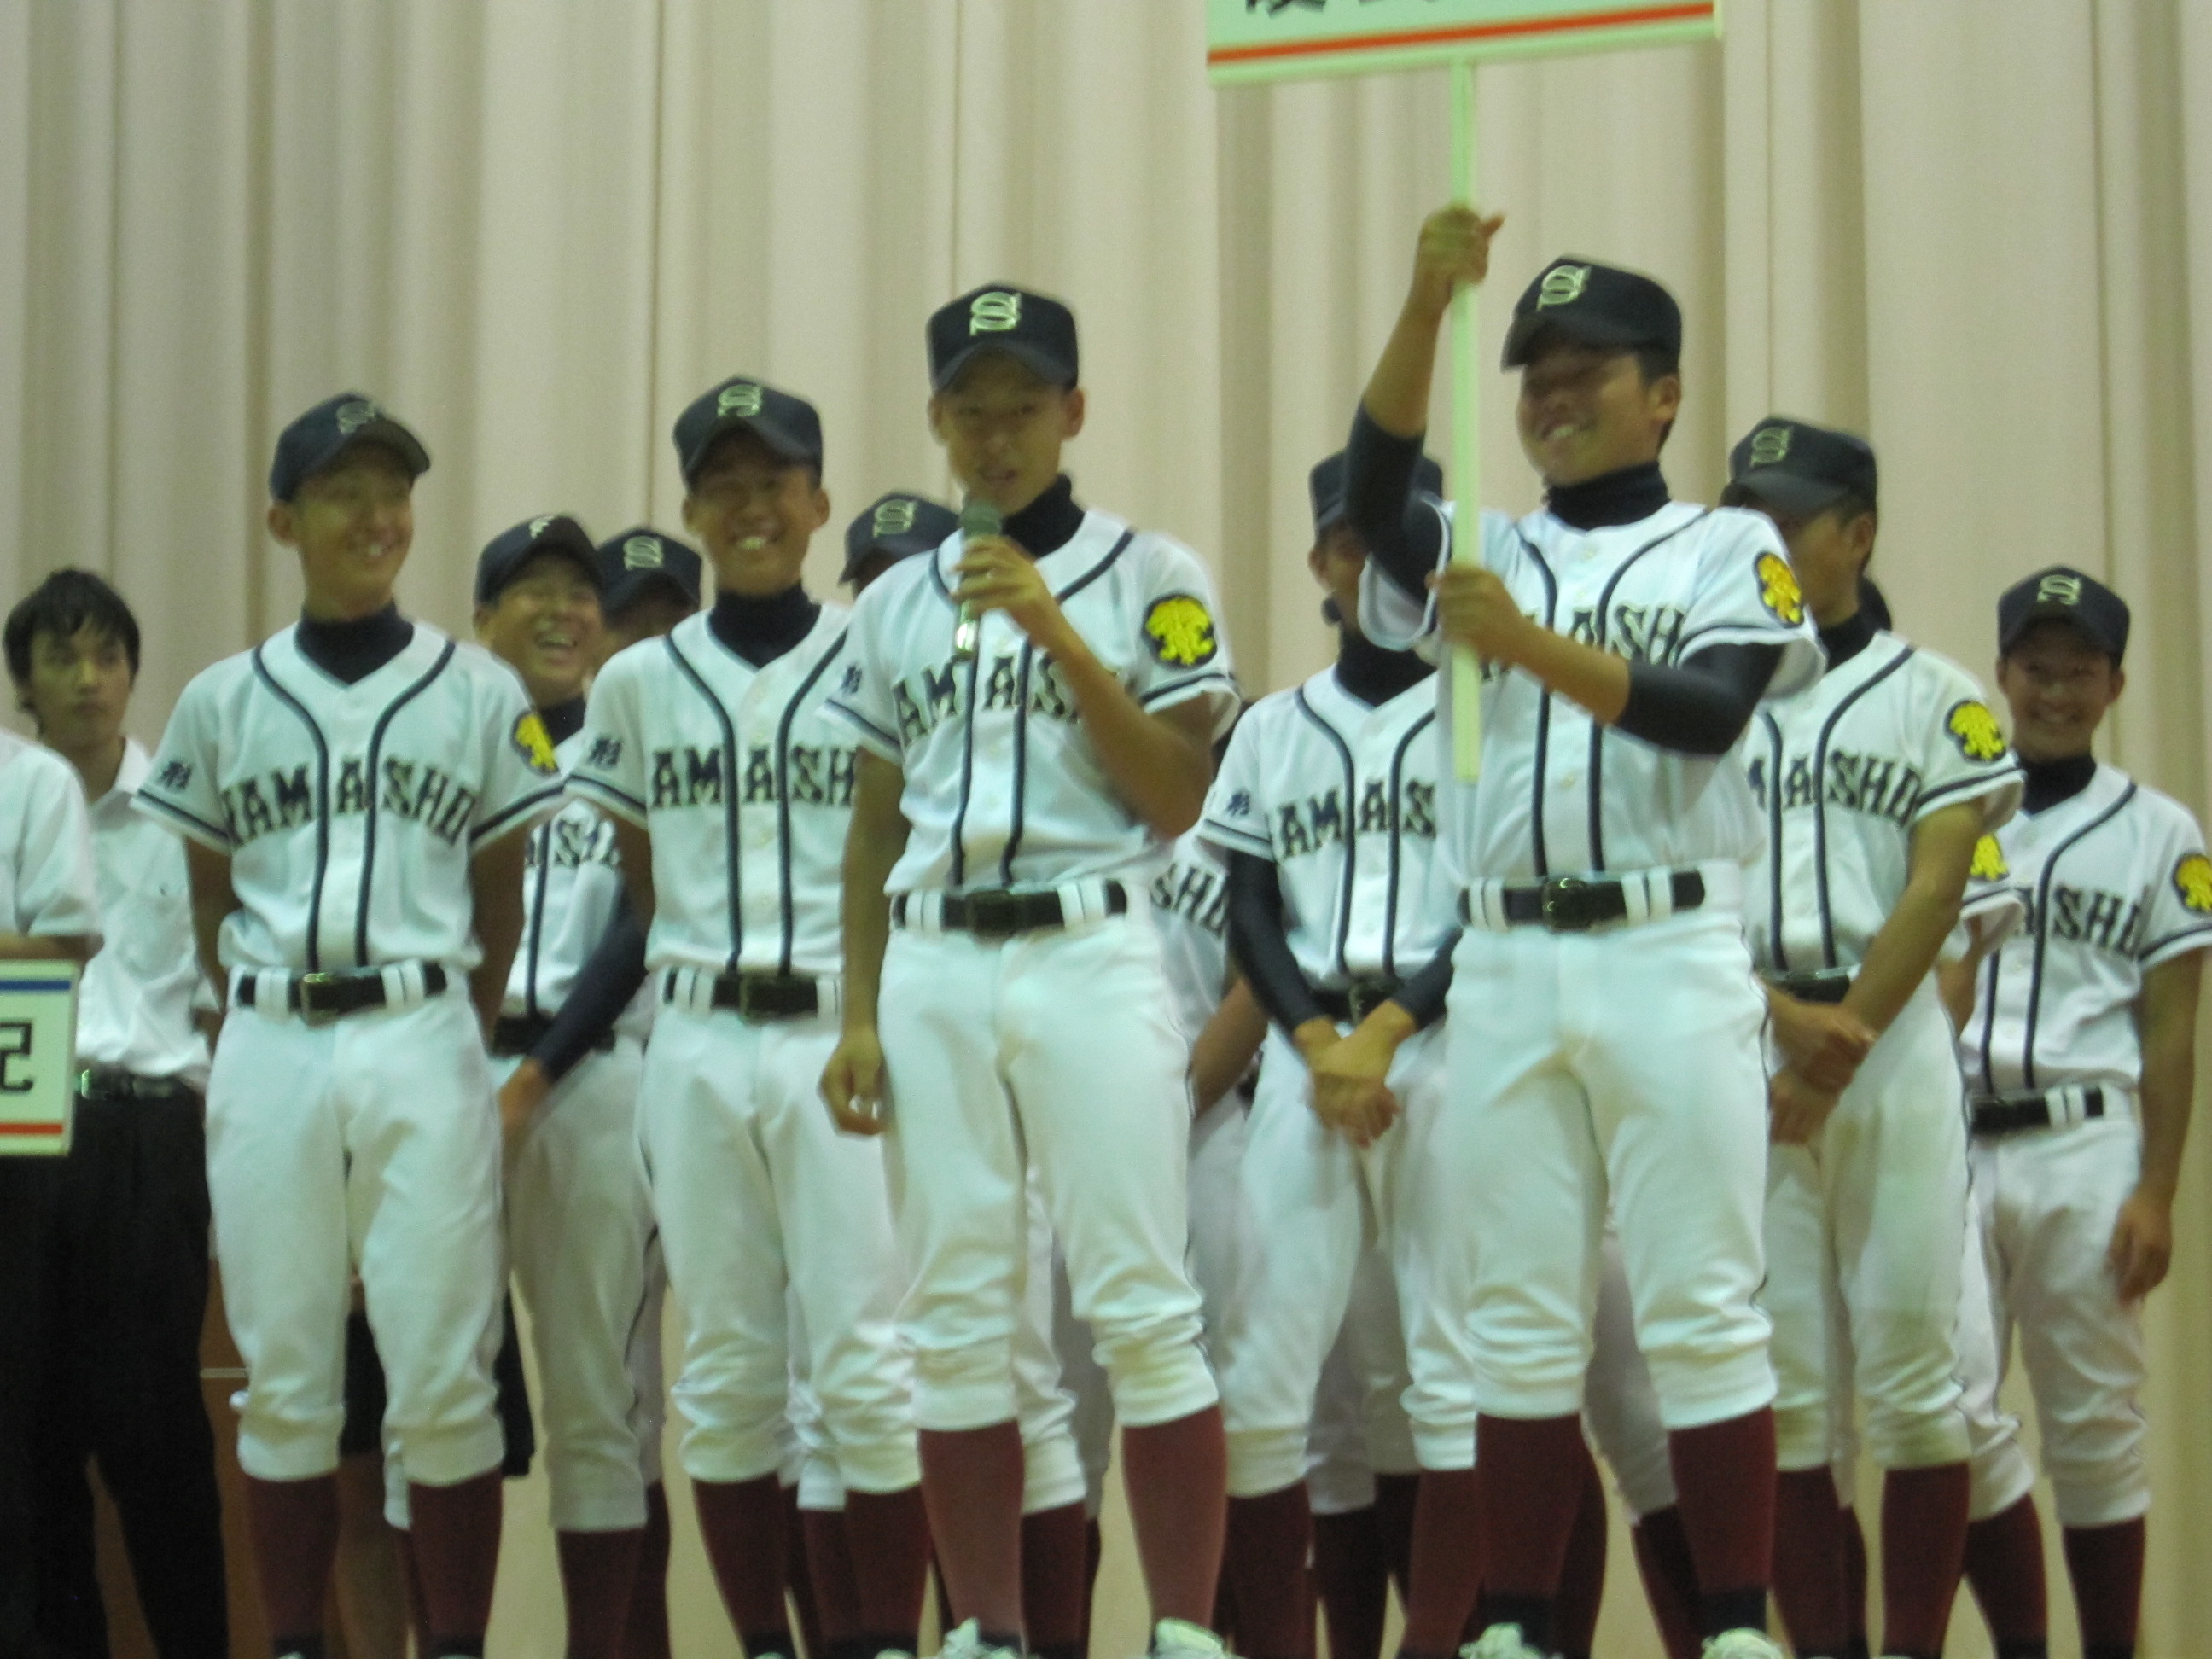 酒田南野球公式戦ユニフォーム - 応援グッズ